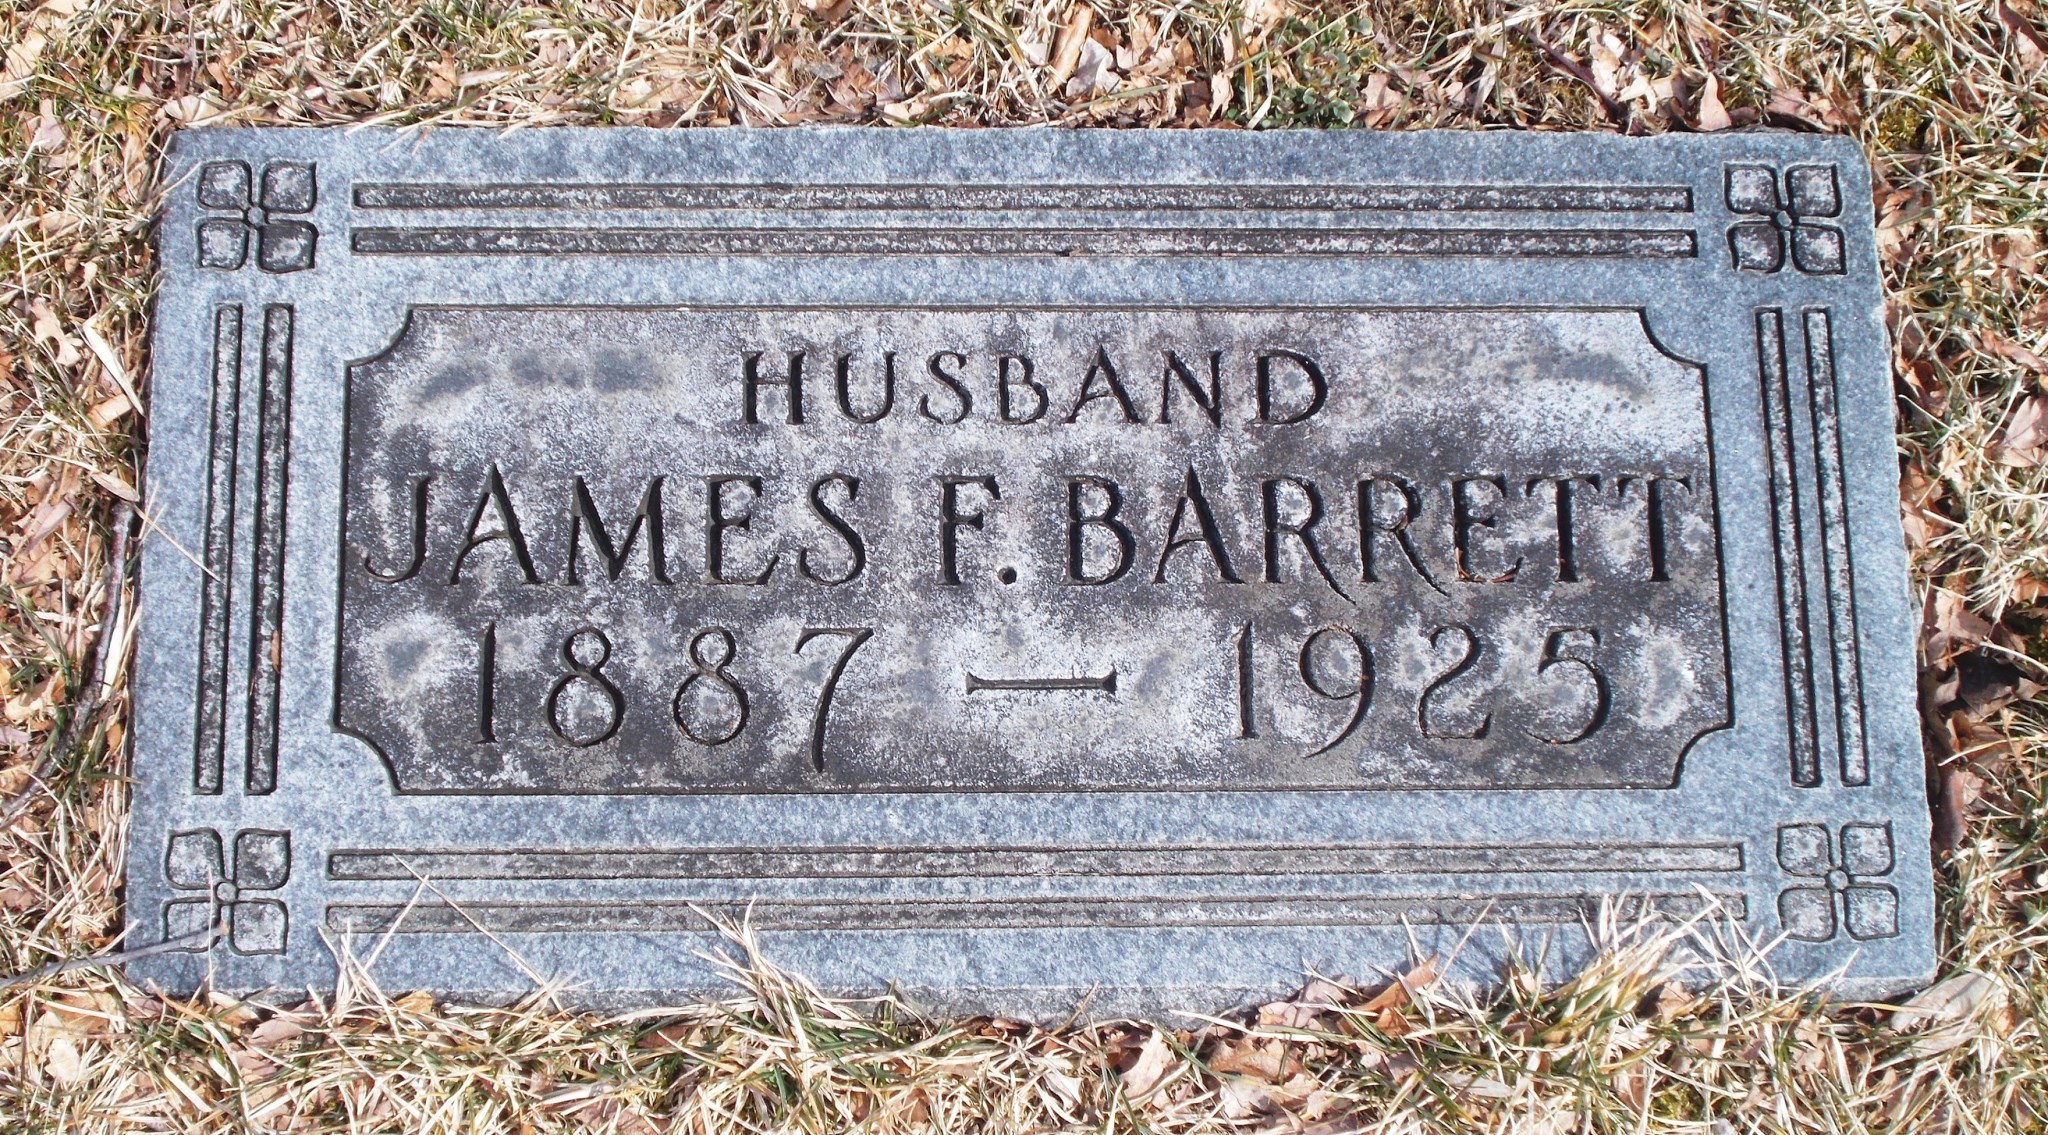 James F Barrett